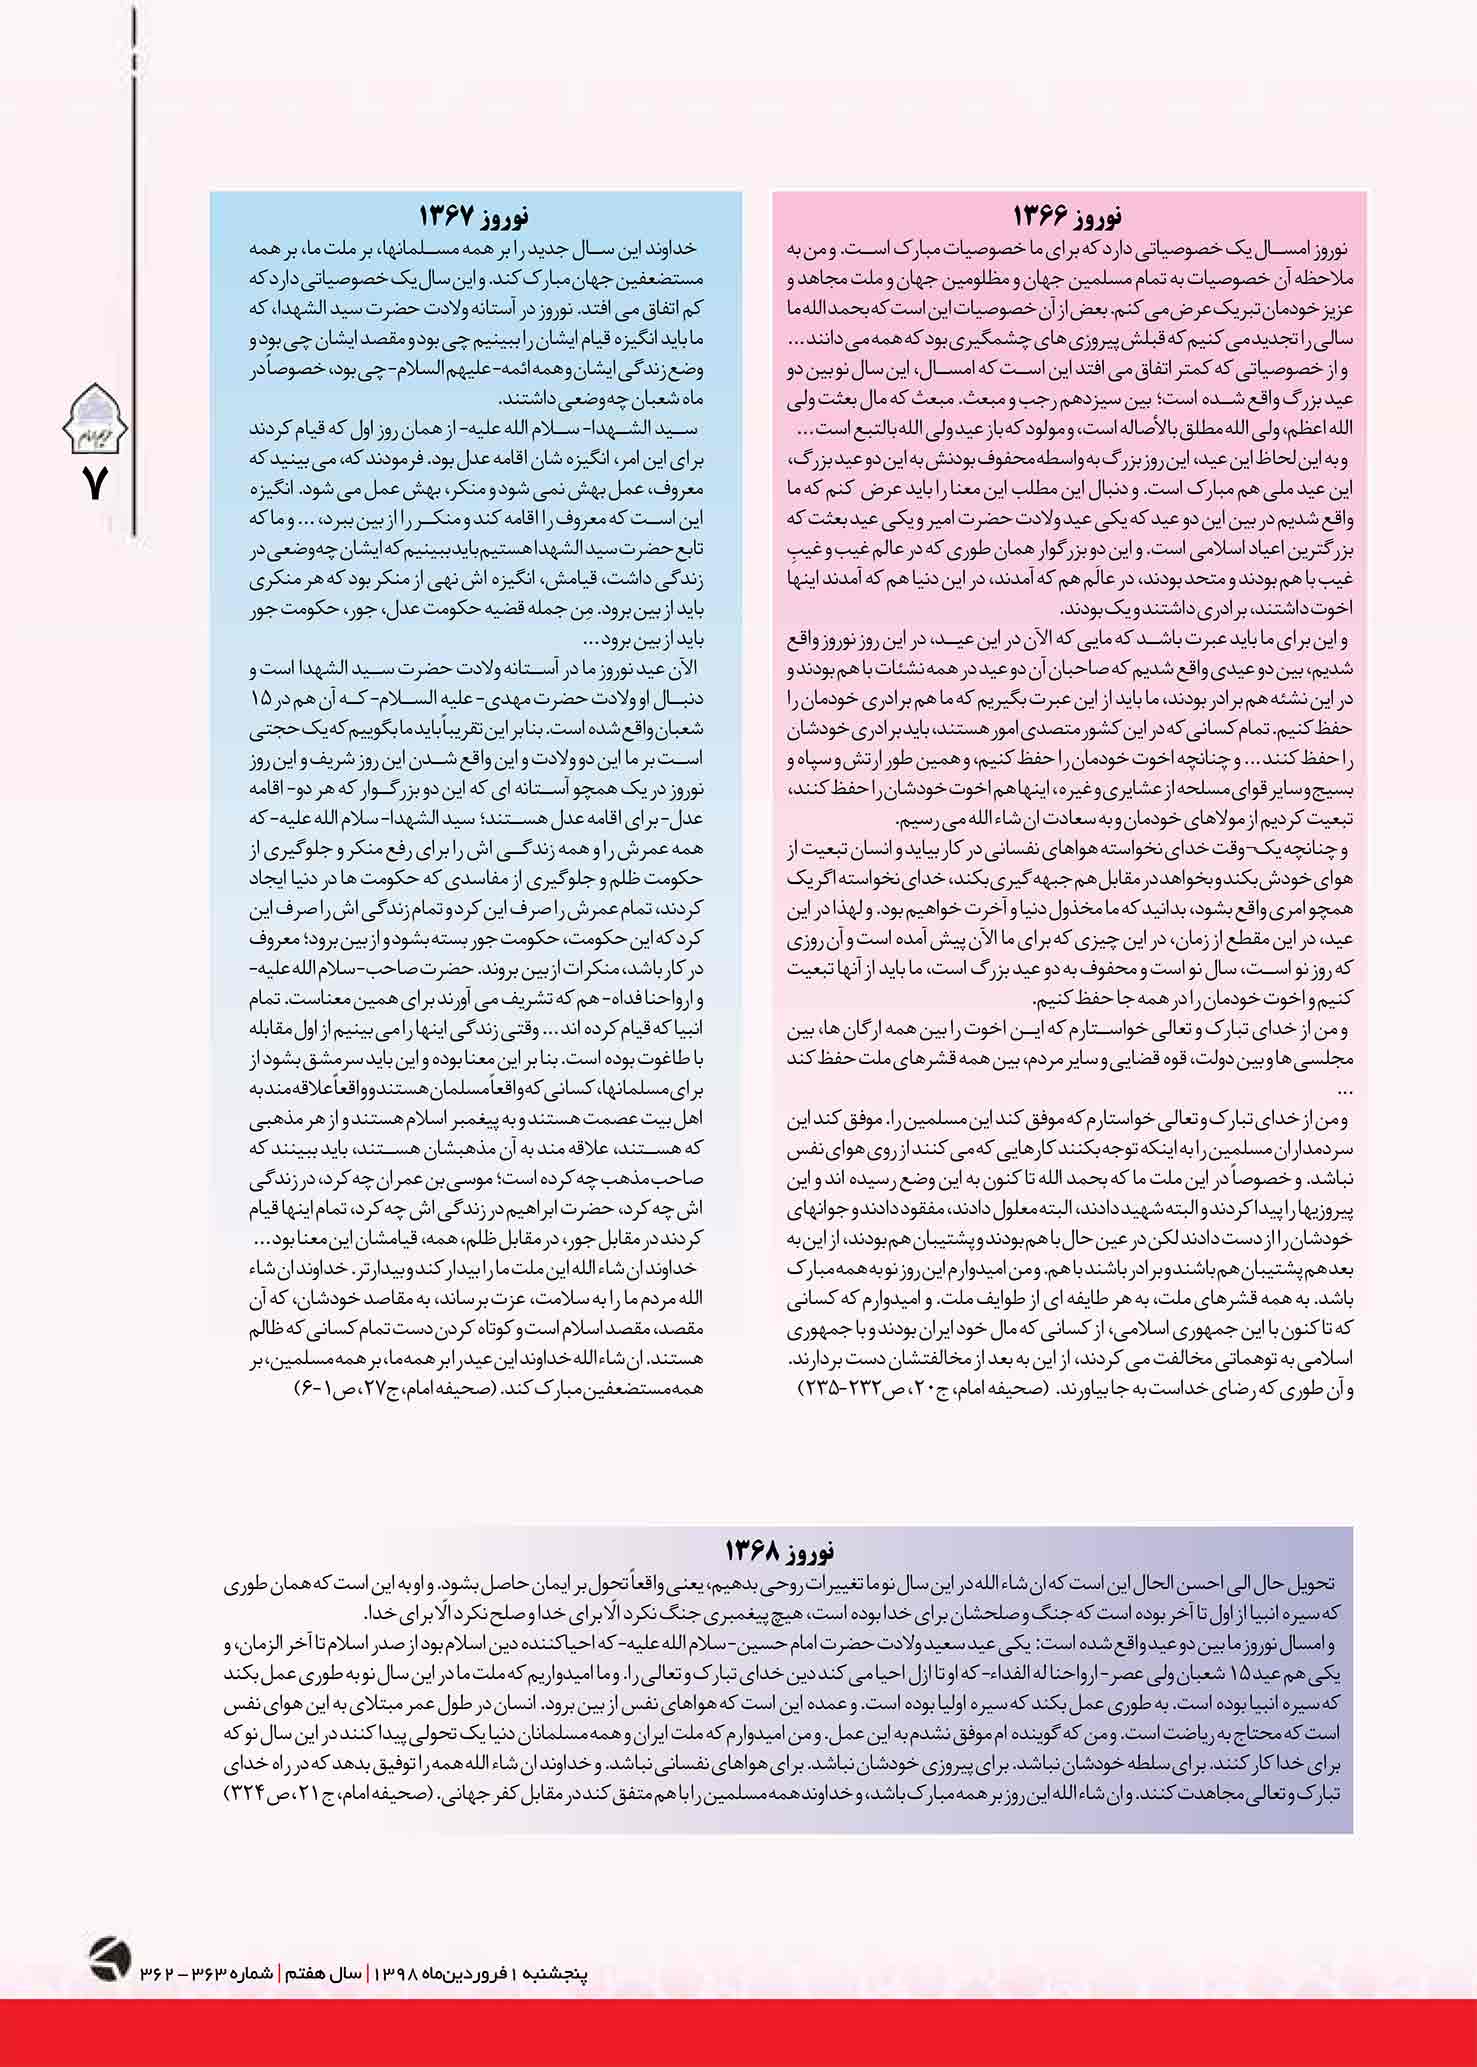 نشریه حریم امام شماره 362 صفحه 7